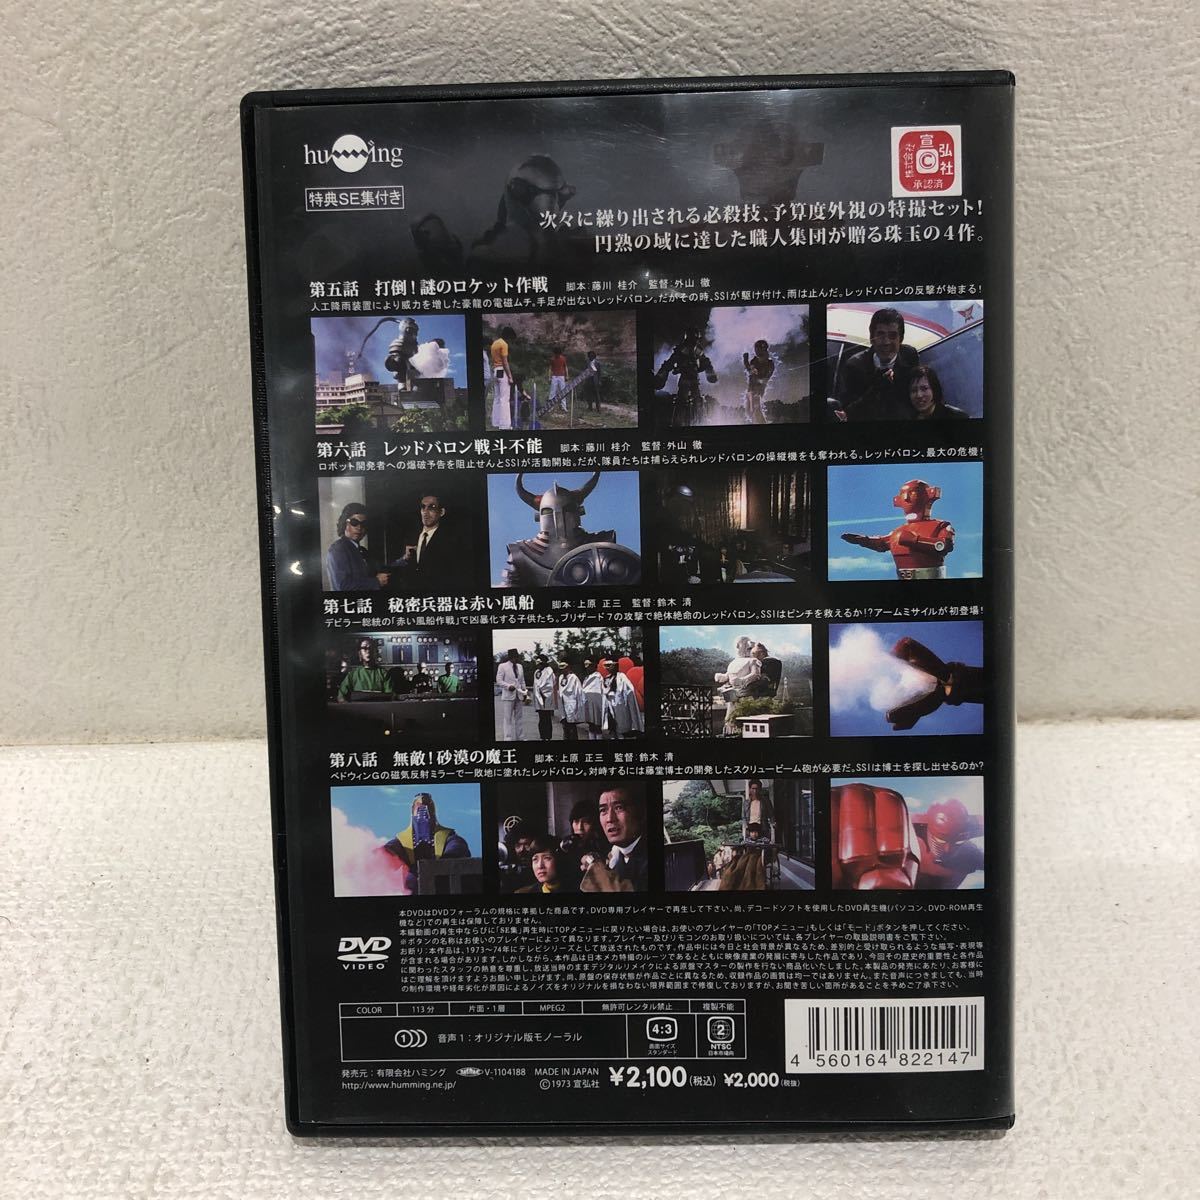 スーパーロボット レッドバロン DVD全巻完結セット